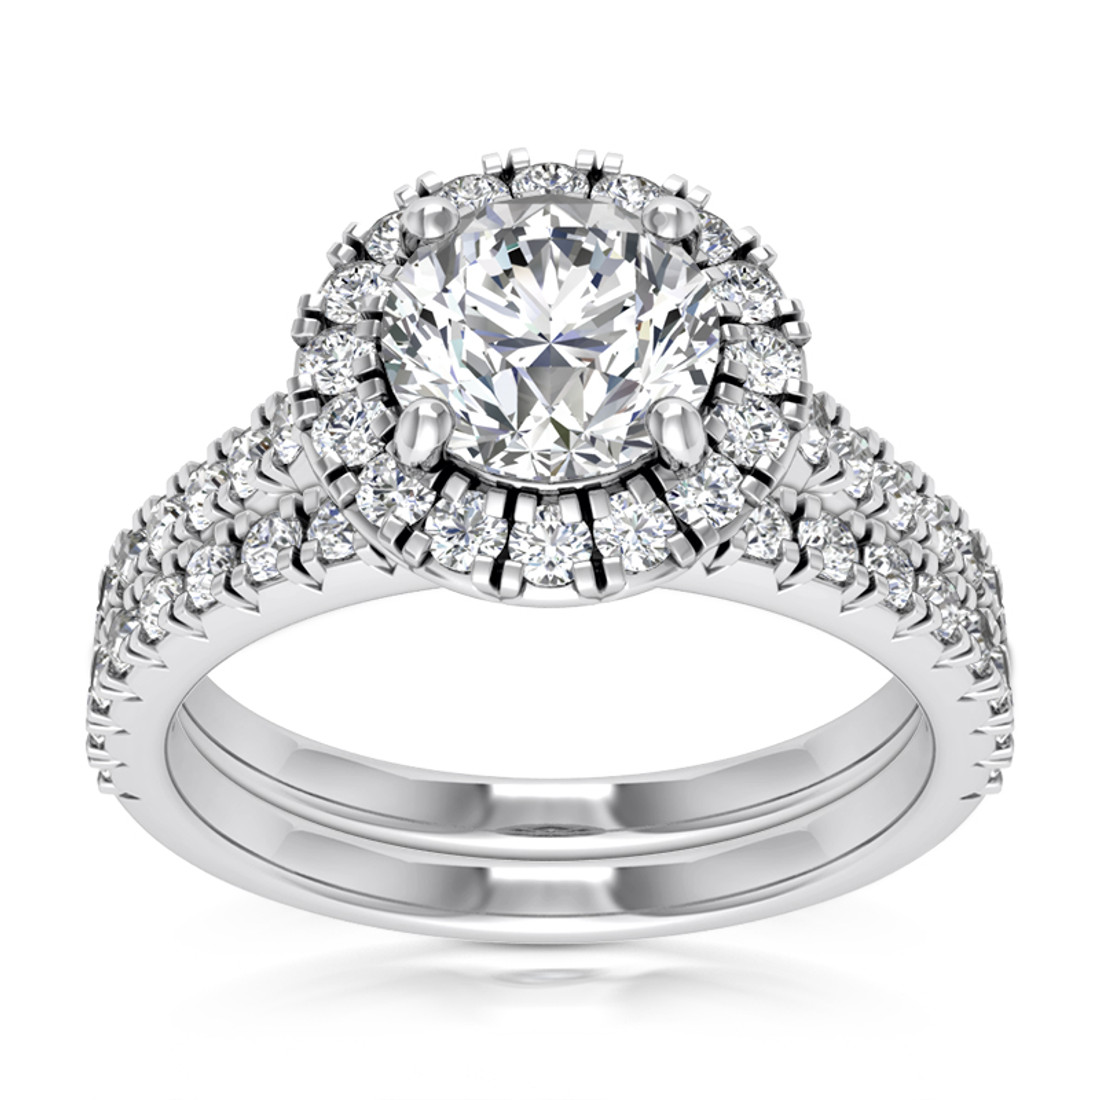 Matching Diamond Halo Engagement Ring Wedding Band Set